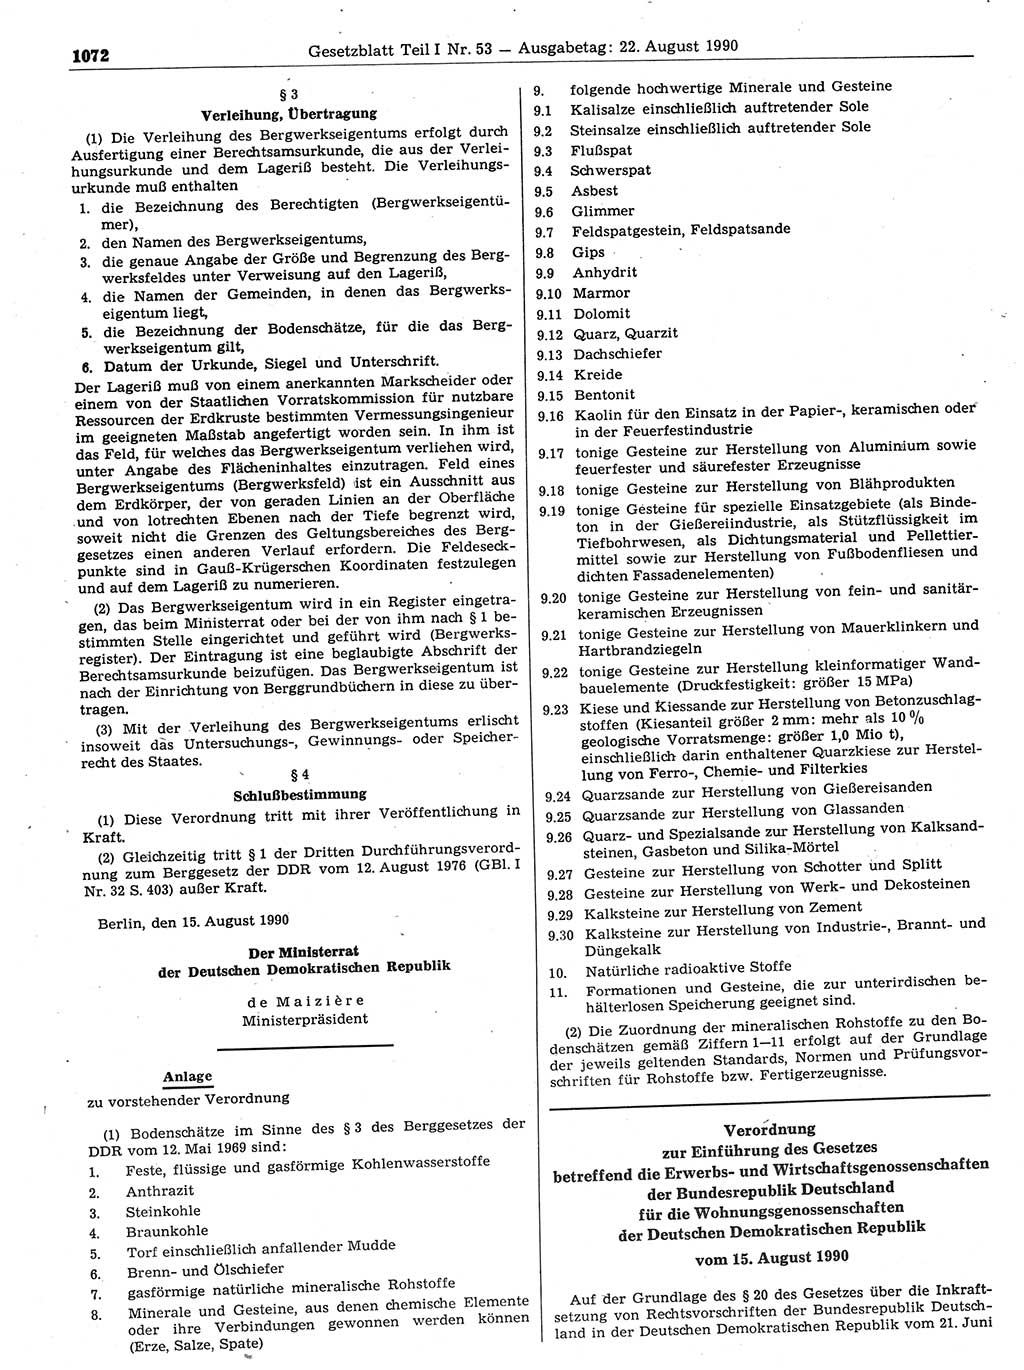 Gesetzblatt (GBl.) der Deutschen Demokratischen Republik (DDR) Teil Ⅰ 1990, Seite 1072 (GBl. DDR Ⅰ 1990, S. 1072)